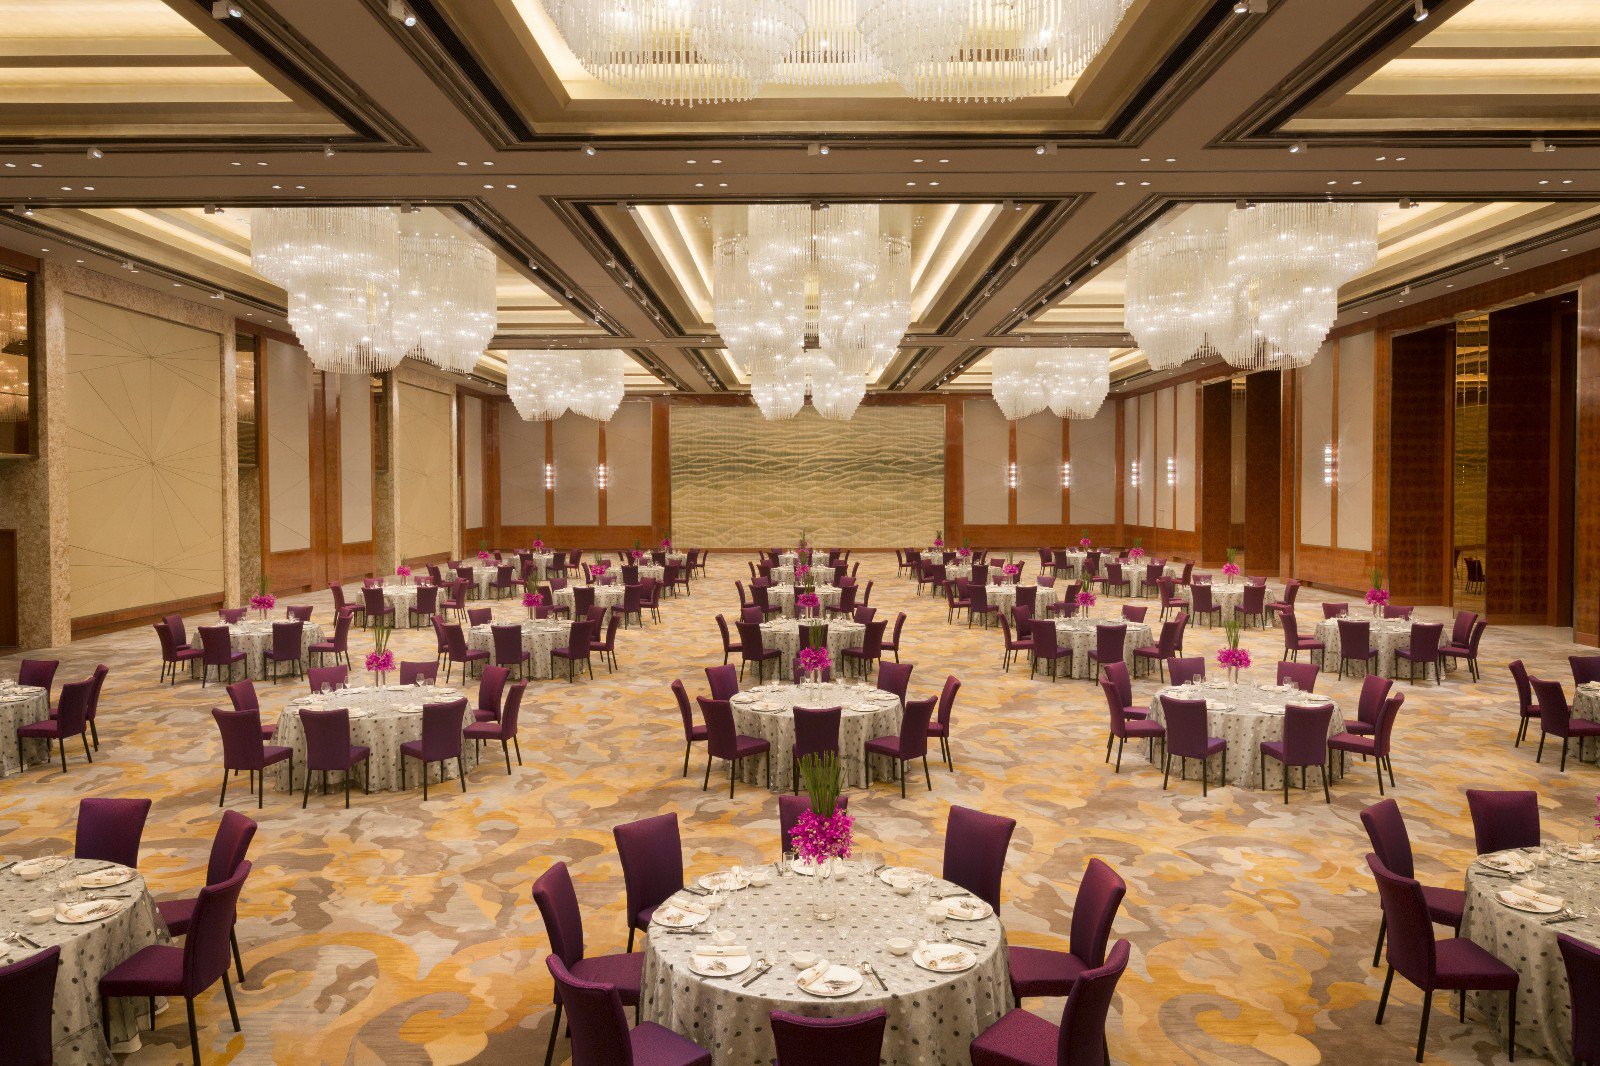 中式酒店大厅餐厅会议室 - 效果图交流区-建E室内设计网